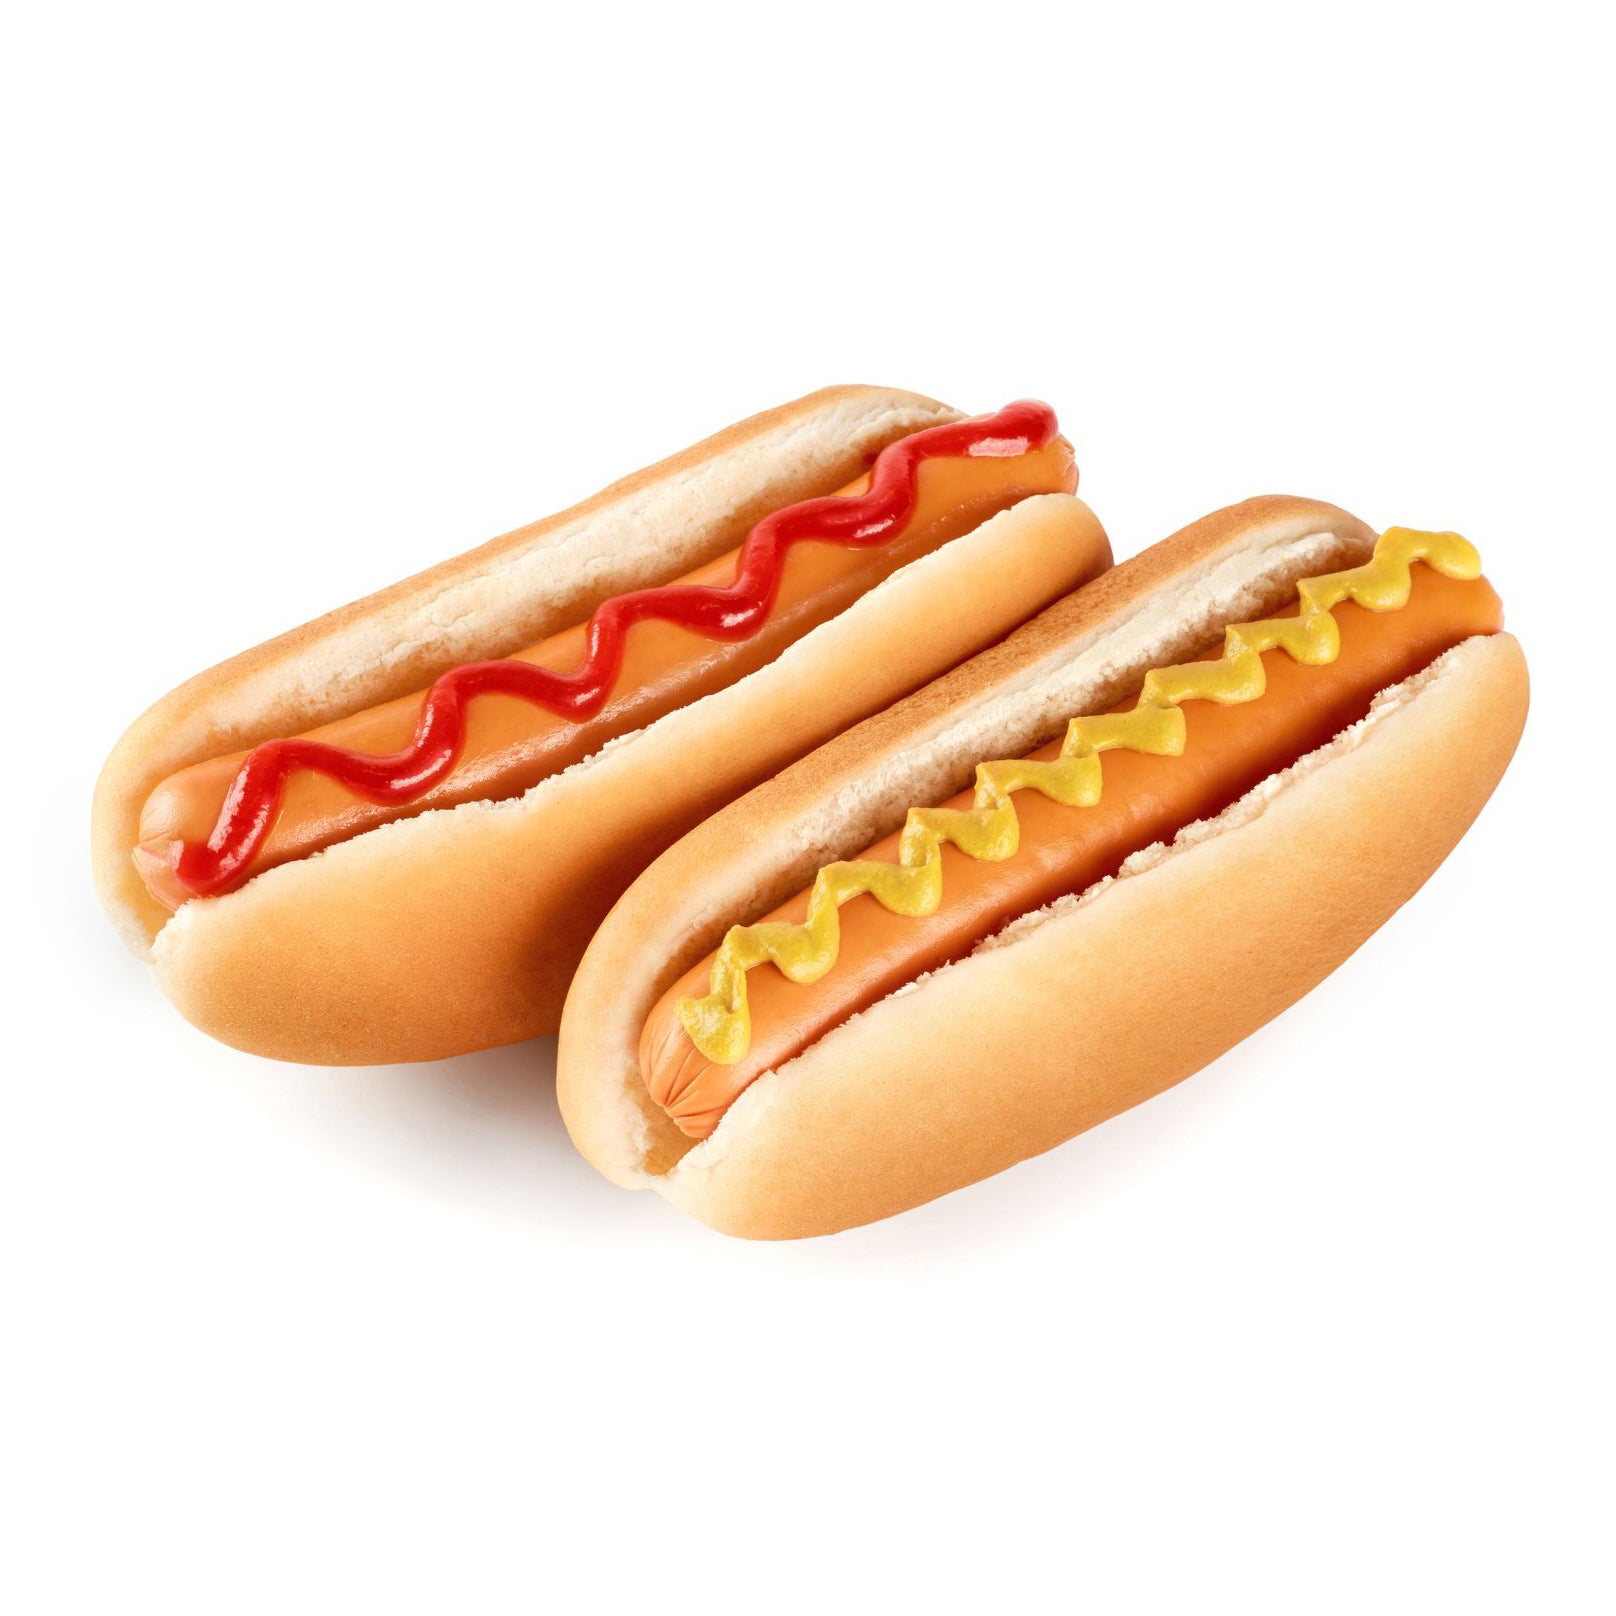 Hot Dog Supplies - A1 EQUIPMENT